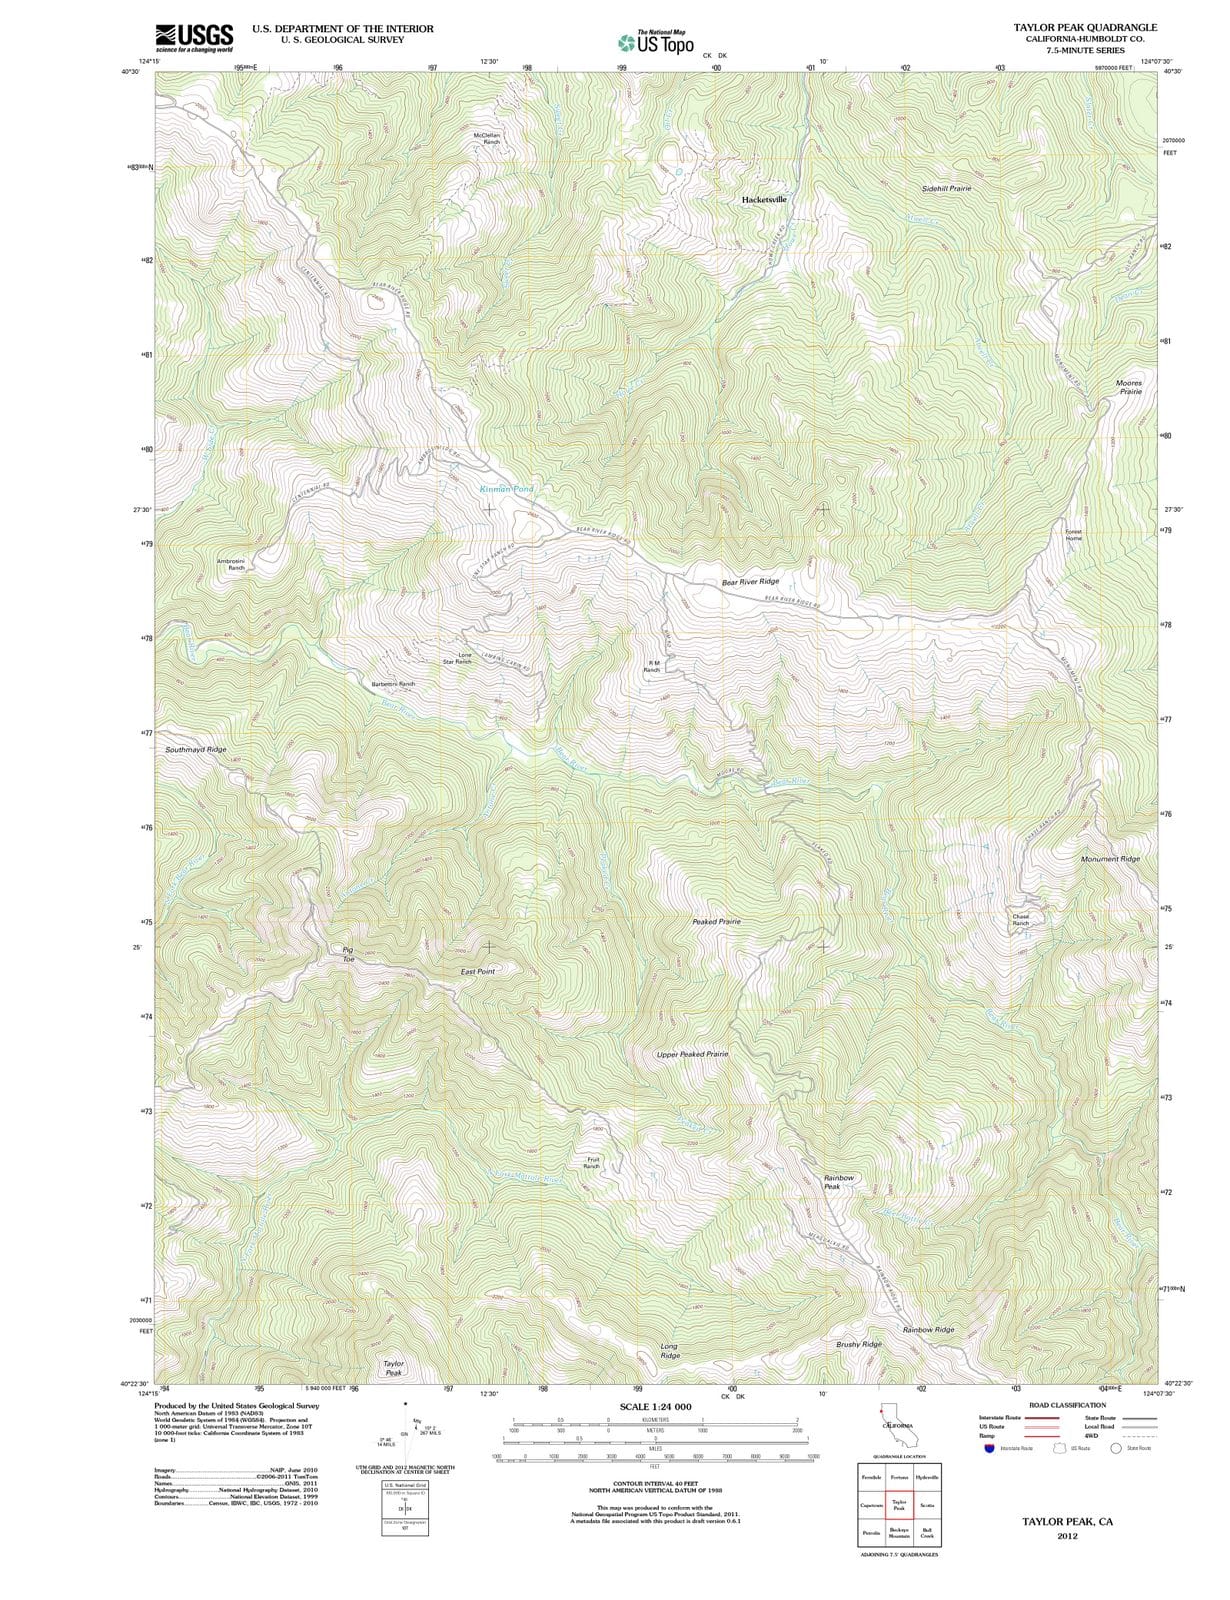 2012 Taylor Peak, CA - California - USGS Topographic Map